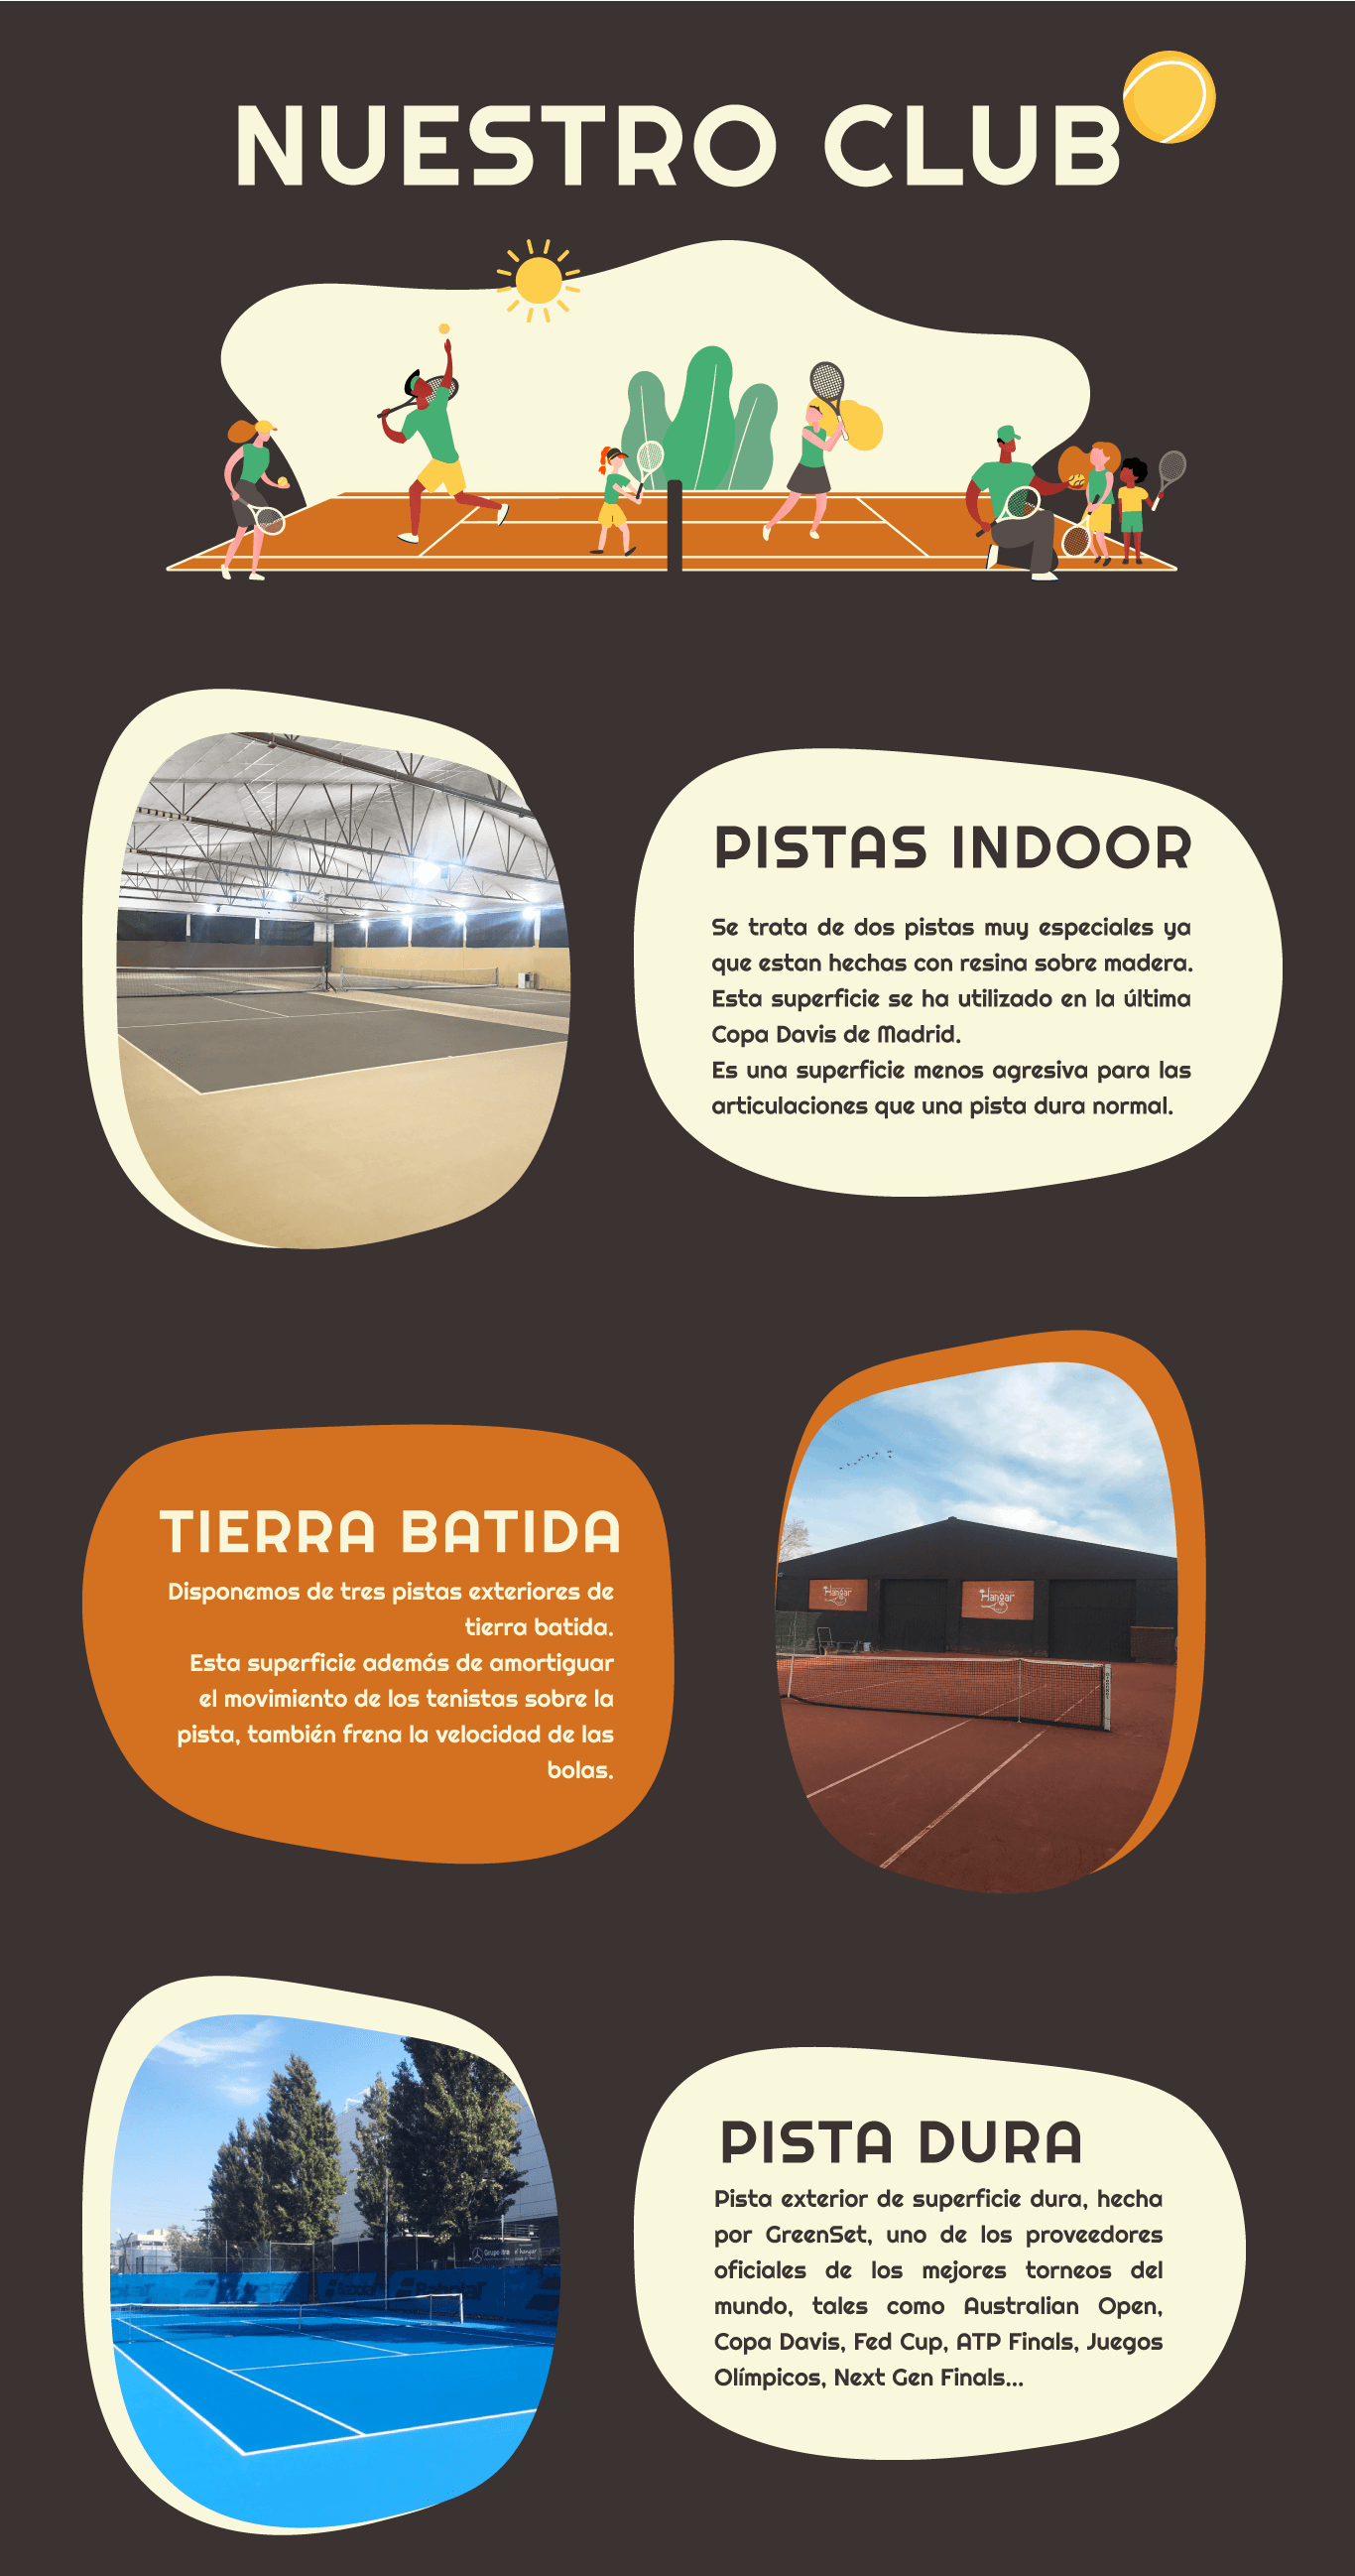 Club de tenis situado en Alcobendas Madrid con pistas de tenis cubiertas indoor, pistas de tierra batida y pista dura.